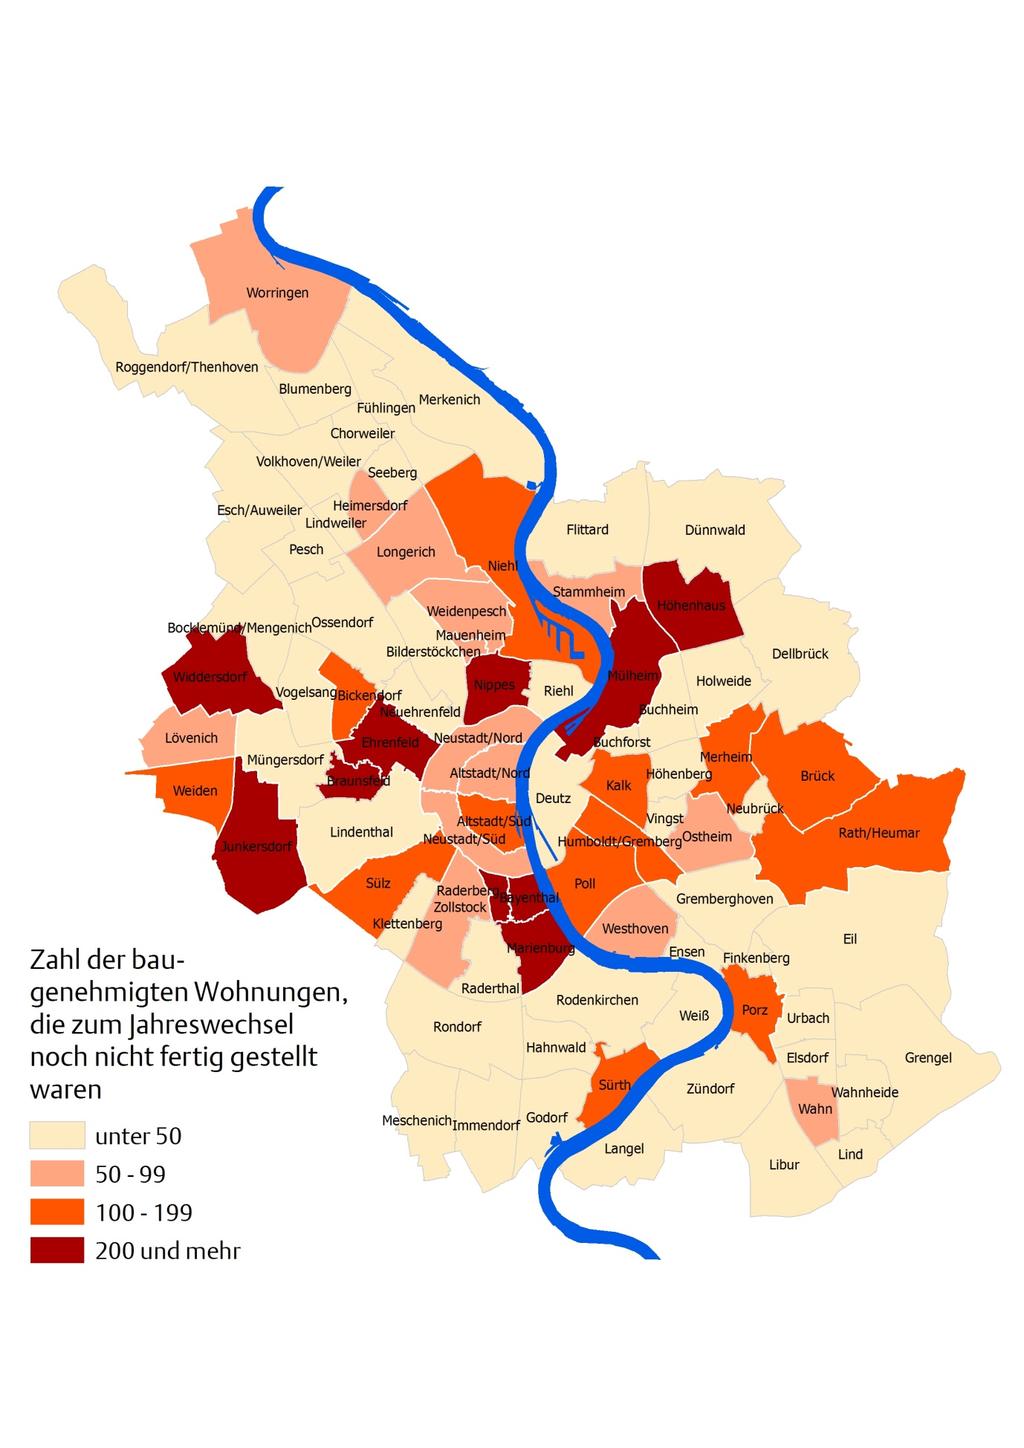 Kölner Statistische Nachrichten - 1/2015 Seite 127 Karte